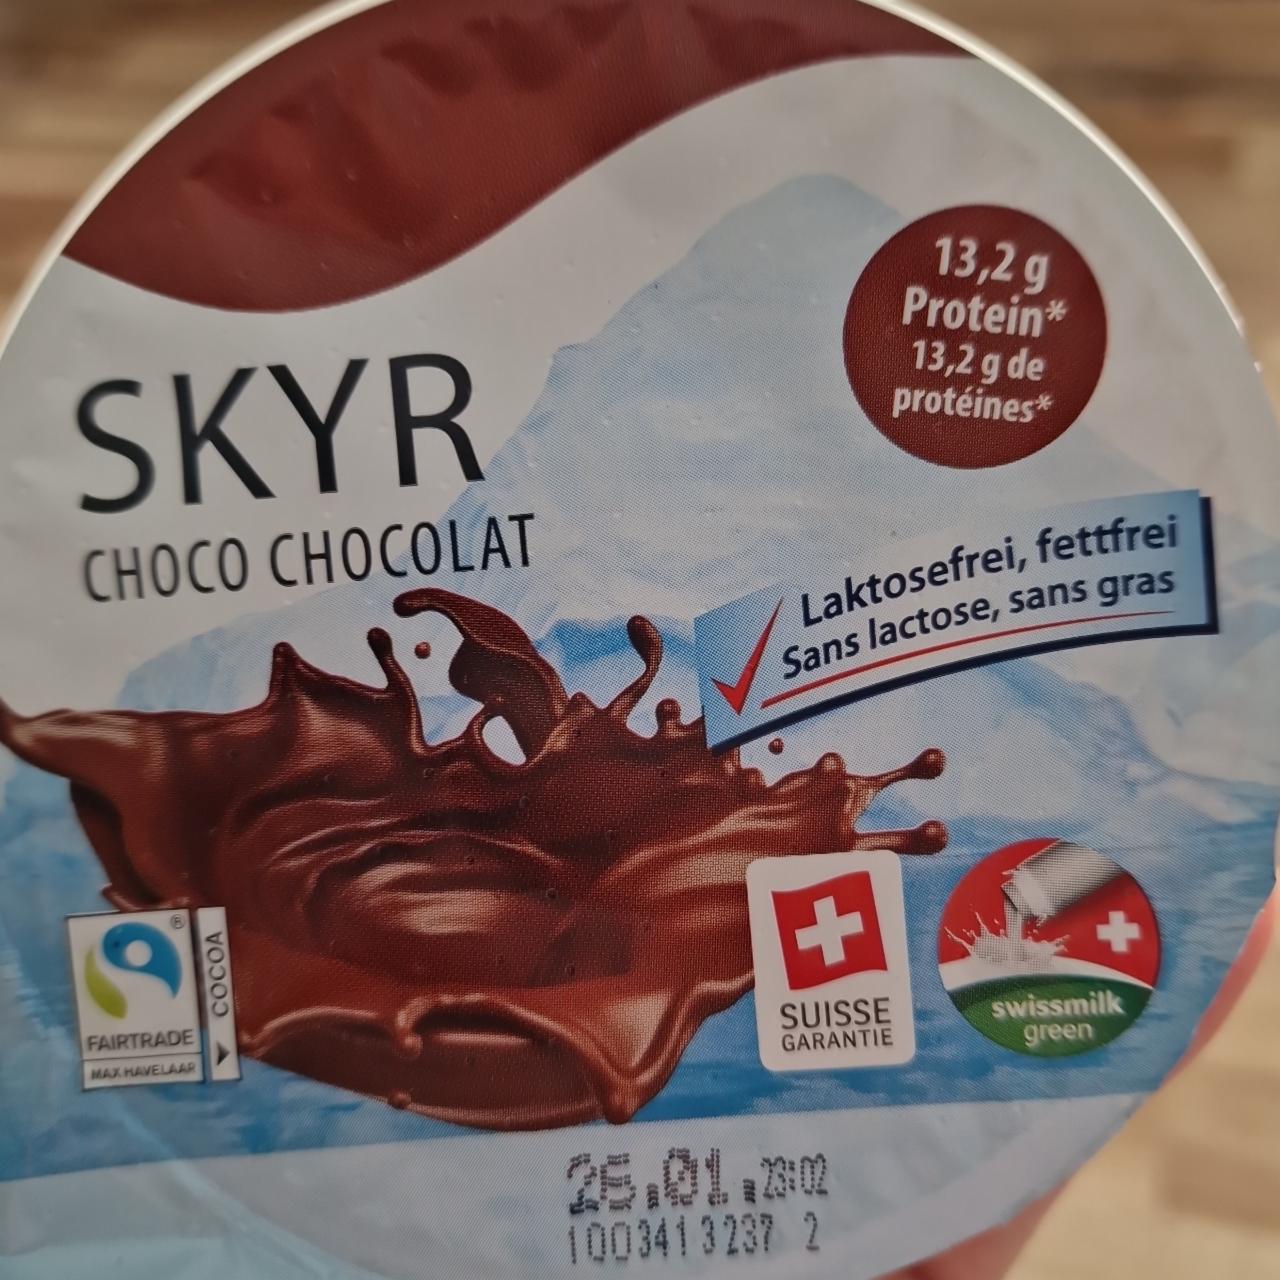 Fotografie - Skyr choco chocolat laktosefrei Suisse Garantie